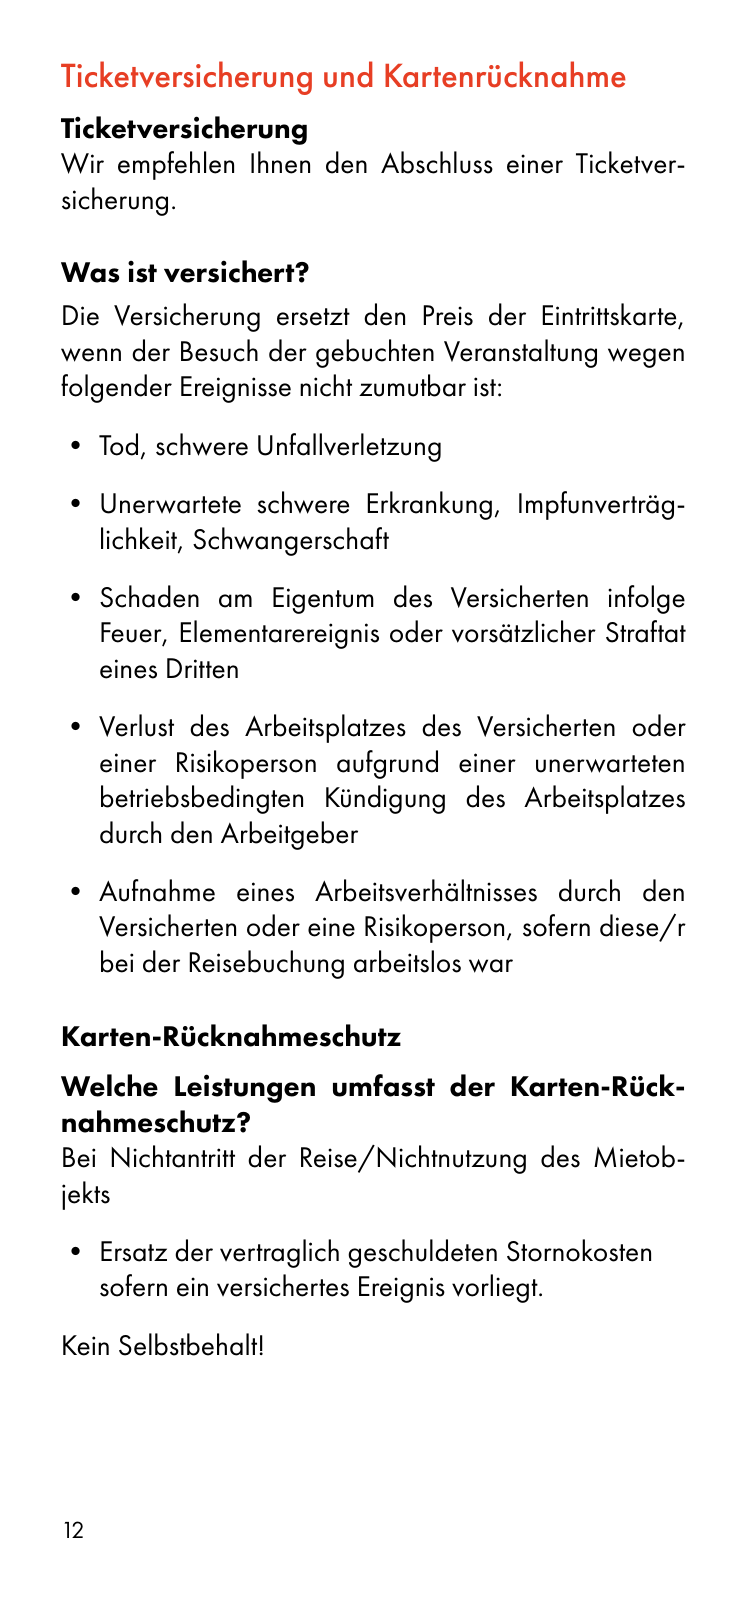 Vorschau Besucherinformation - Ticket only 24.08. Seite 12